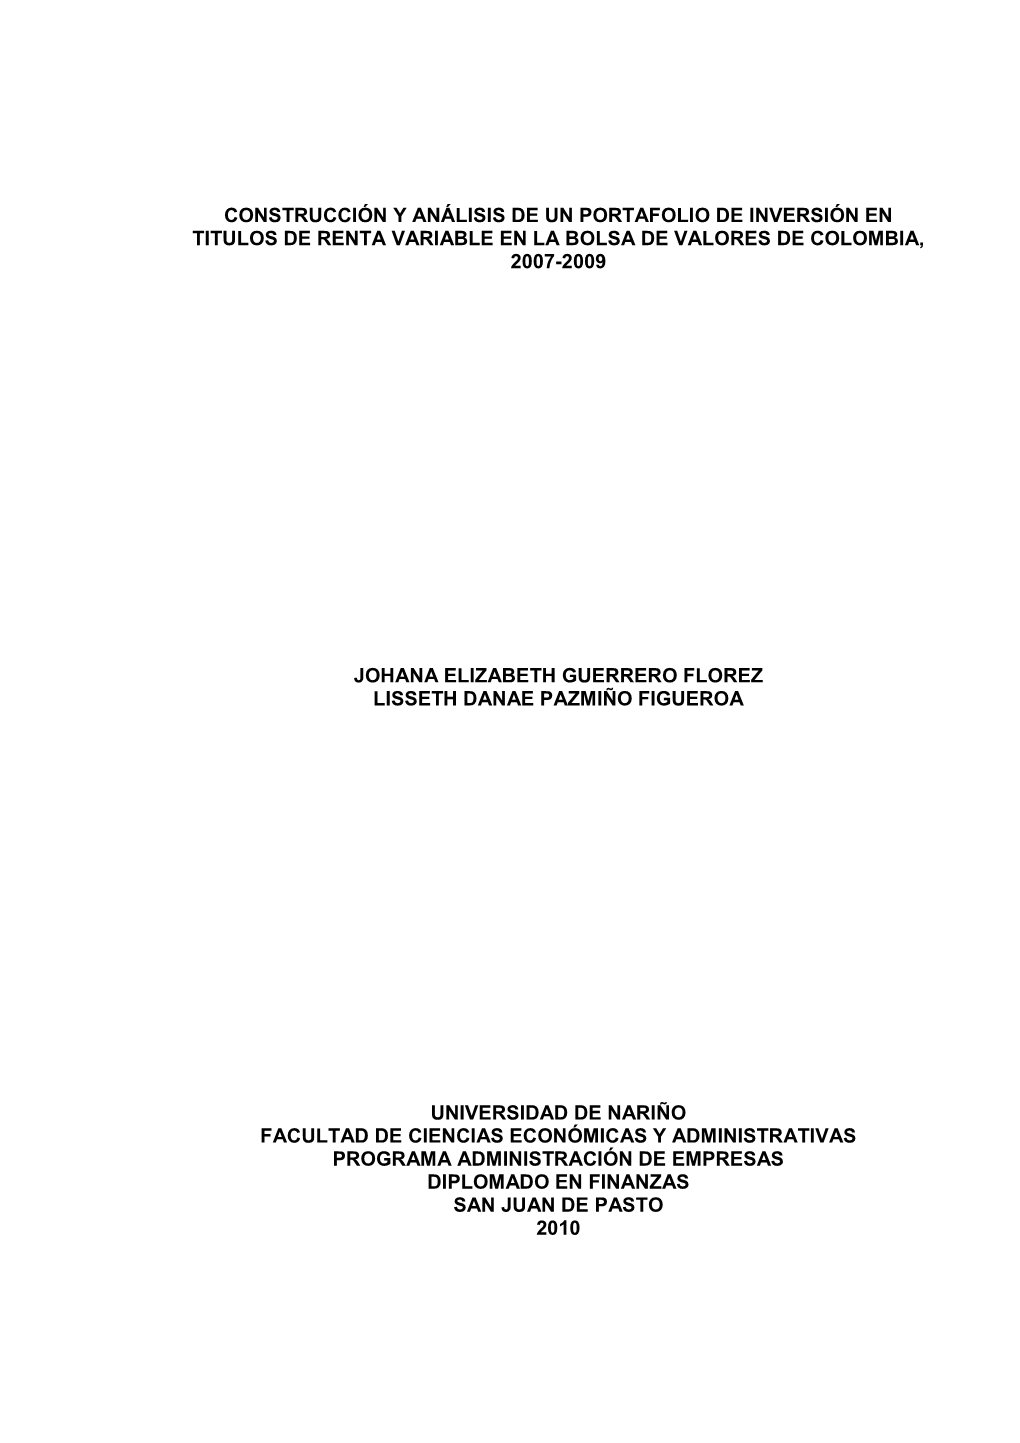 Construcción Y Análisis De Un Portafolio De Inversión En Titulos De Renta Variable En La Bolsa De Valores De Colombia, 2007-2009